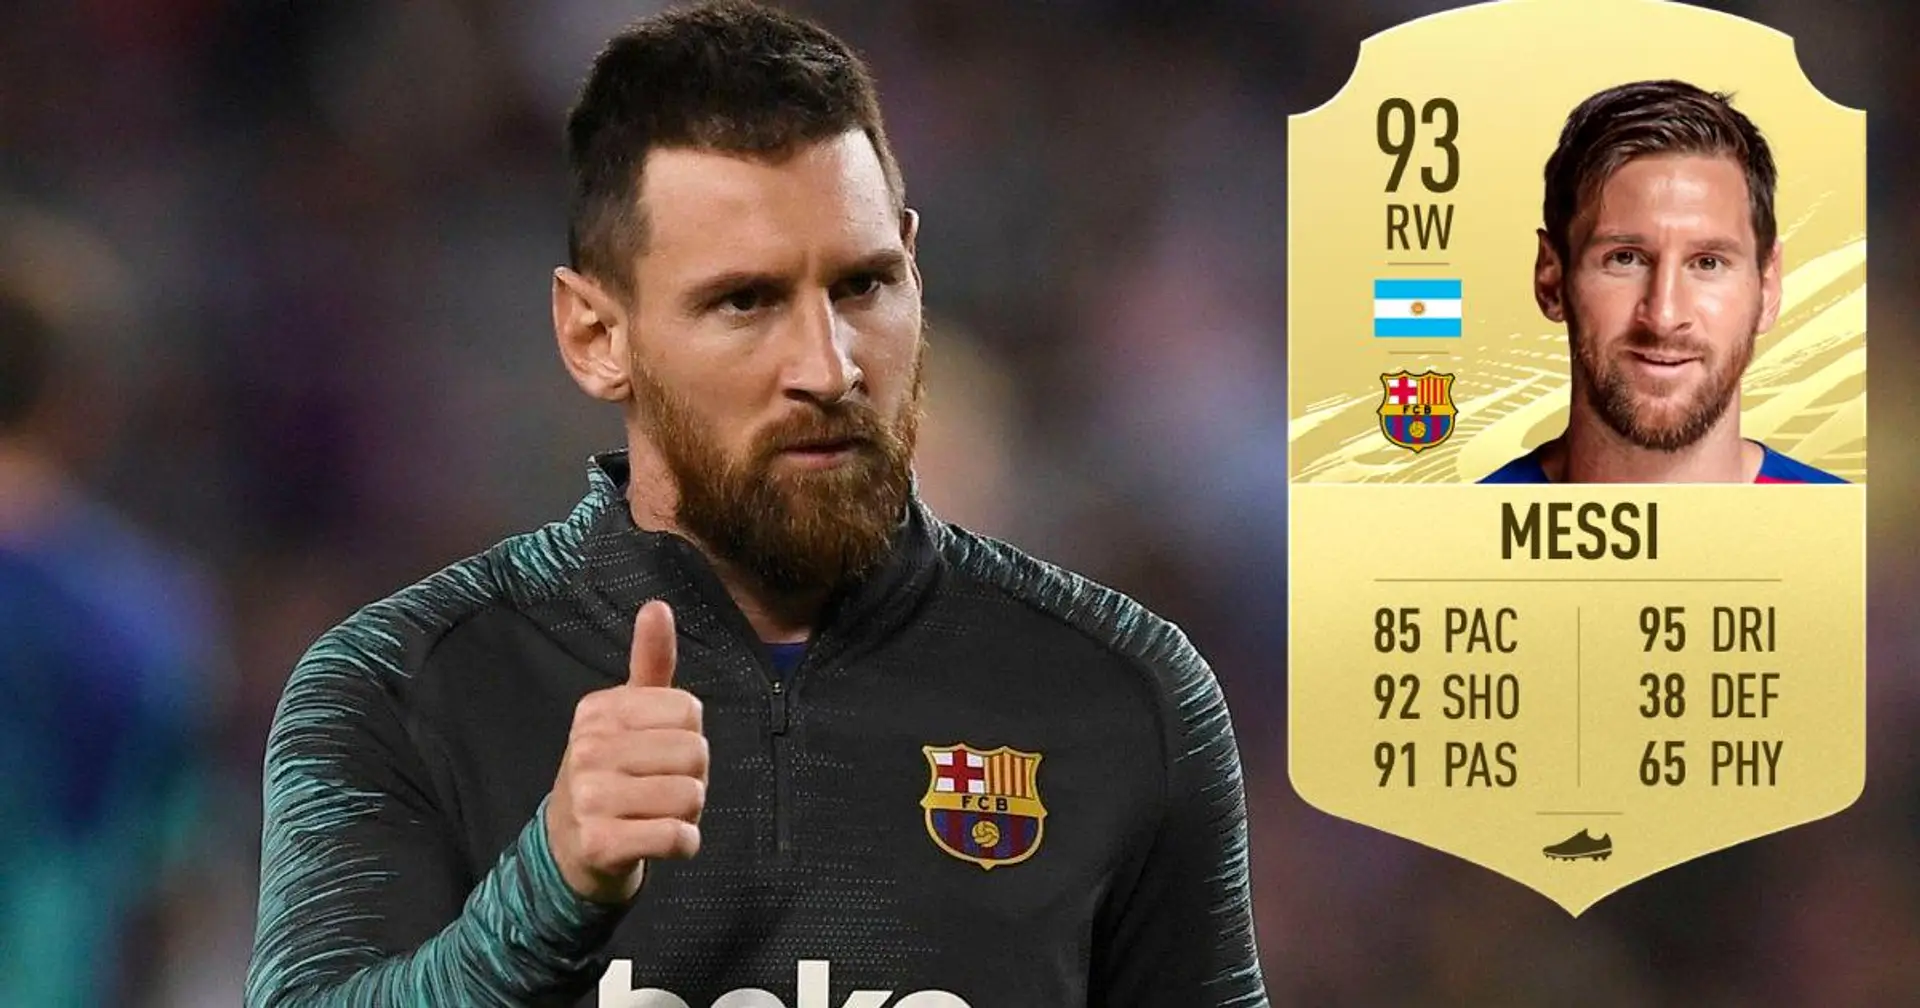 Leo Messi se ubica por encima de Cristiano Ronaldo como jugador mejor calificado en FIFA 21